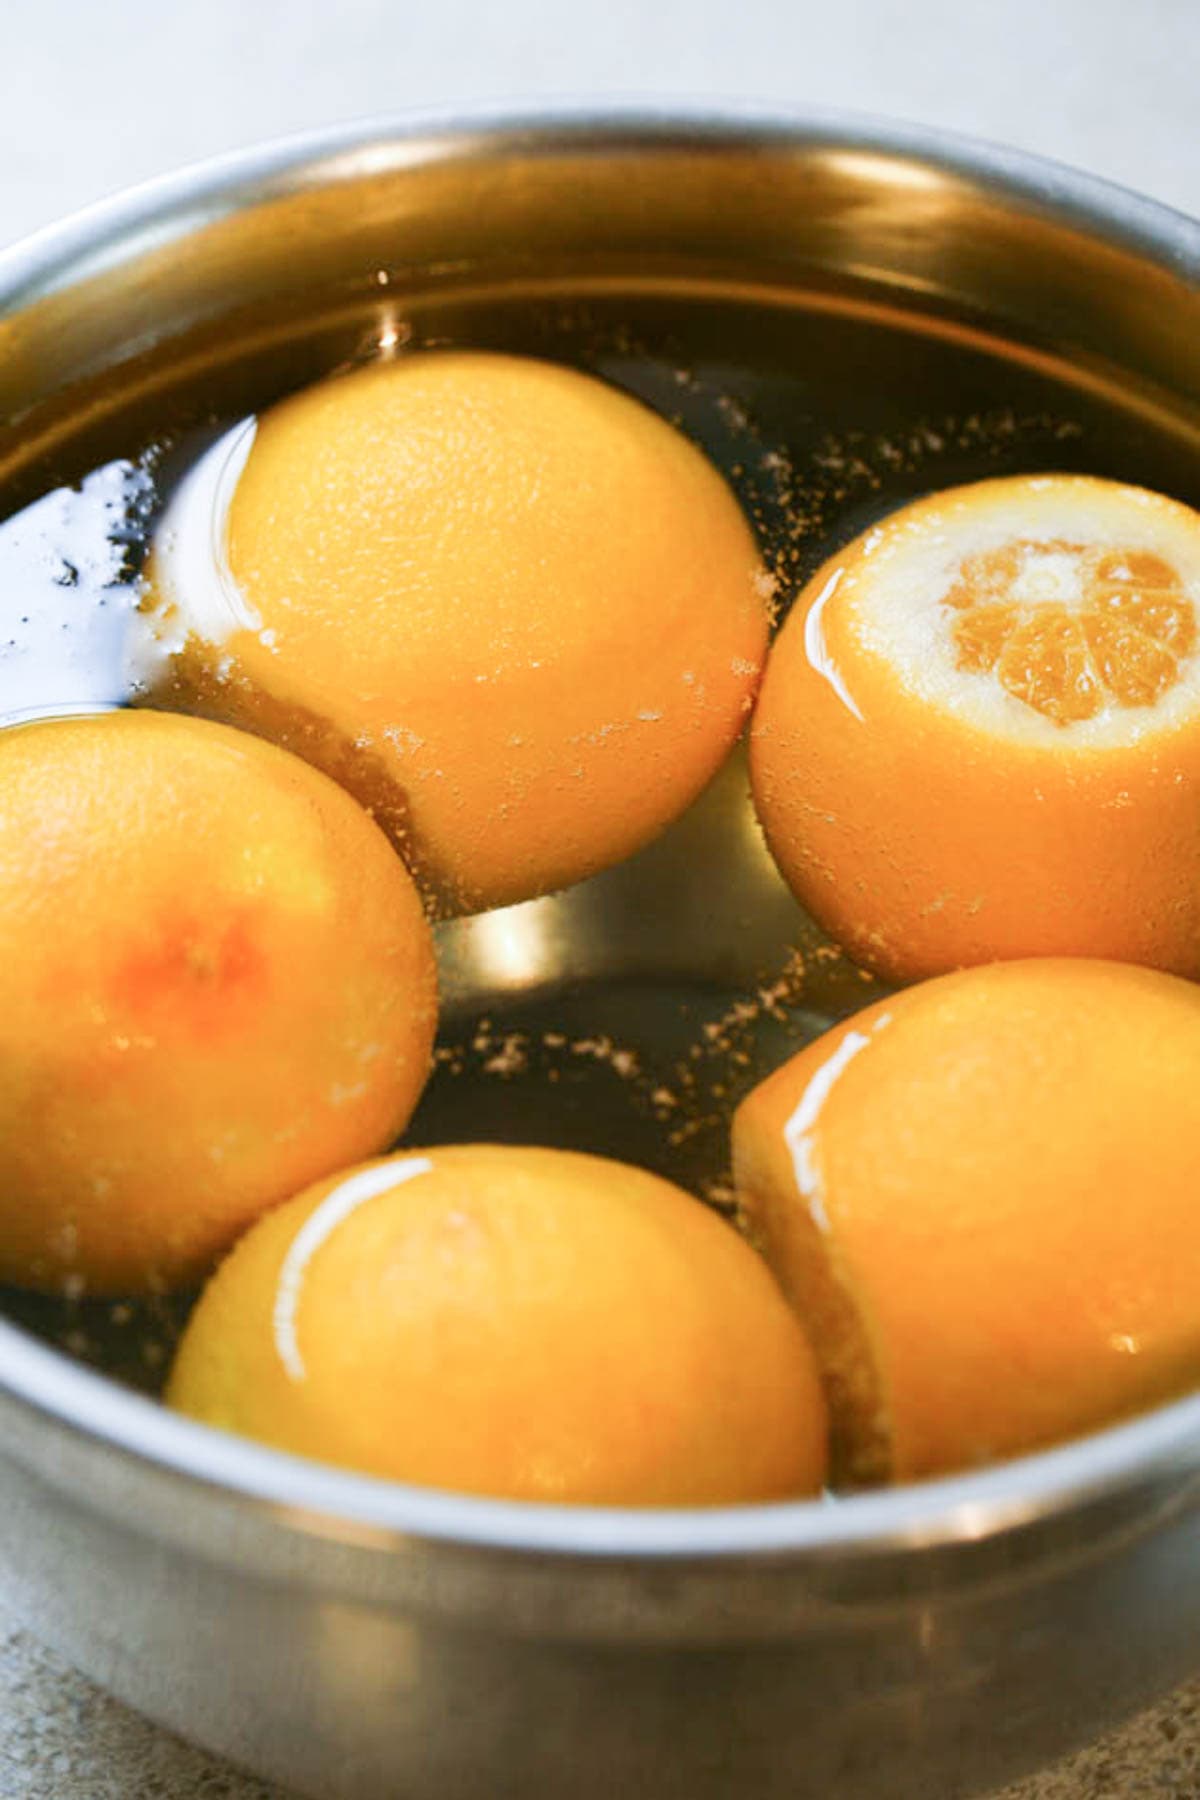 oranges soaking in water